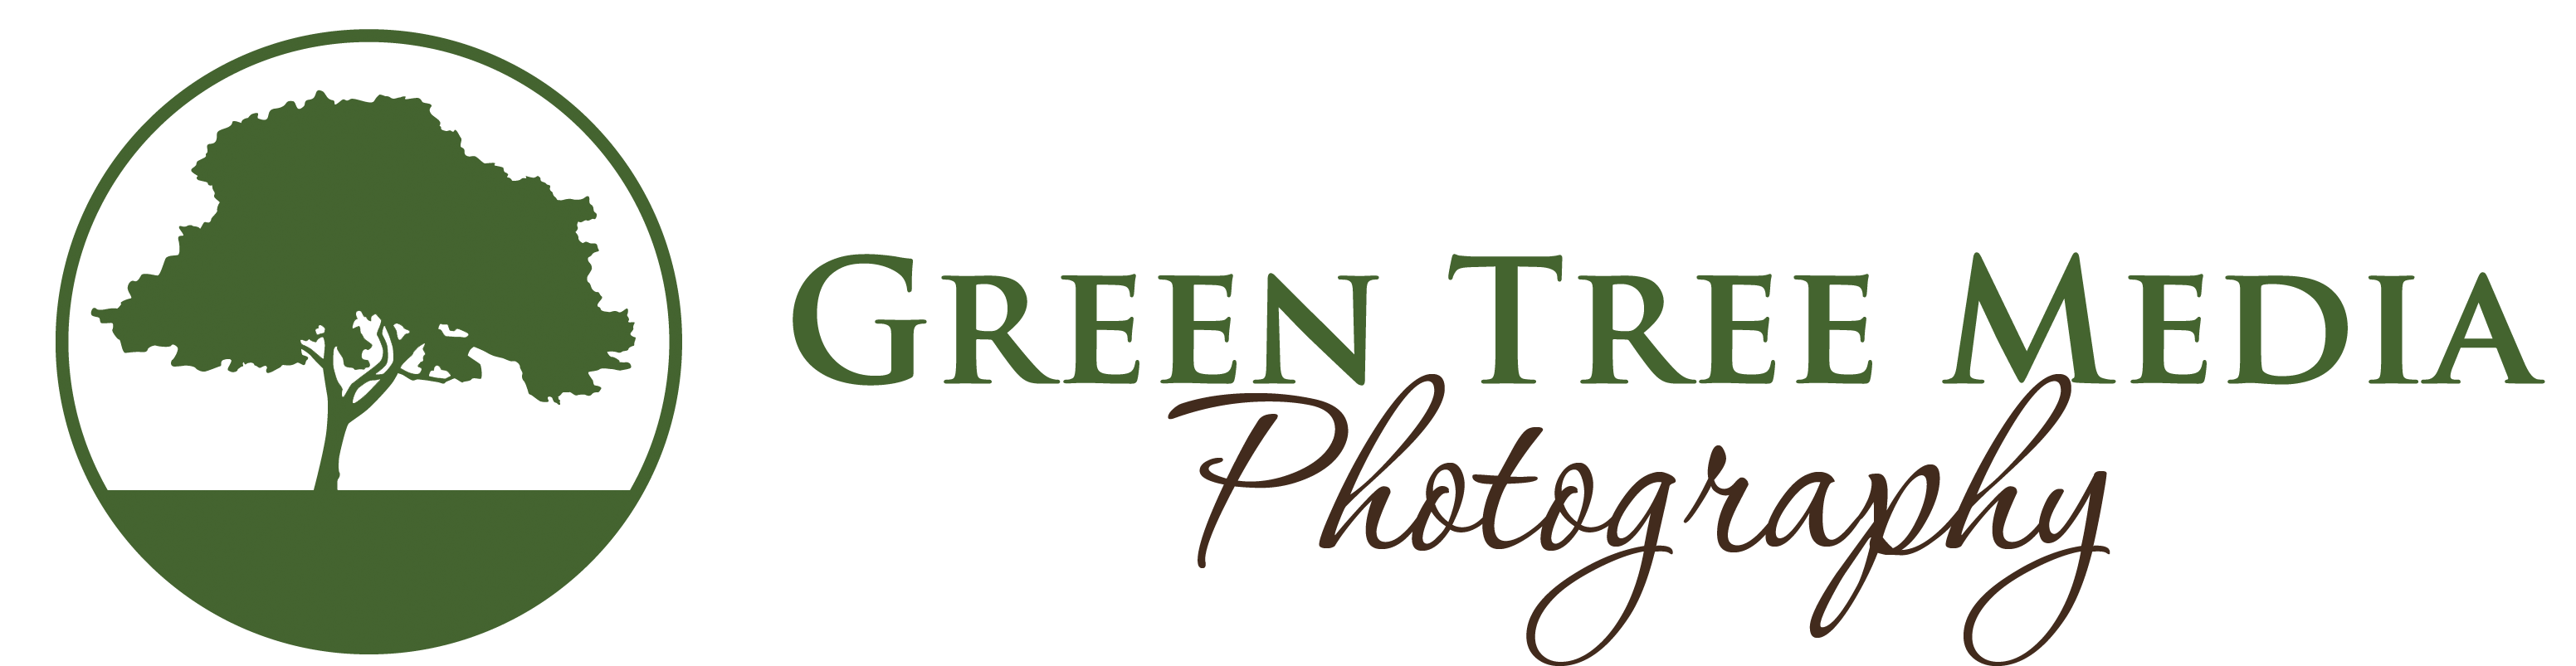 Green Tree Media Photography